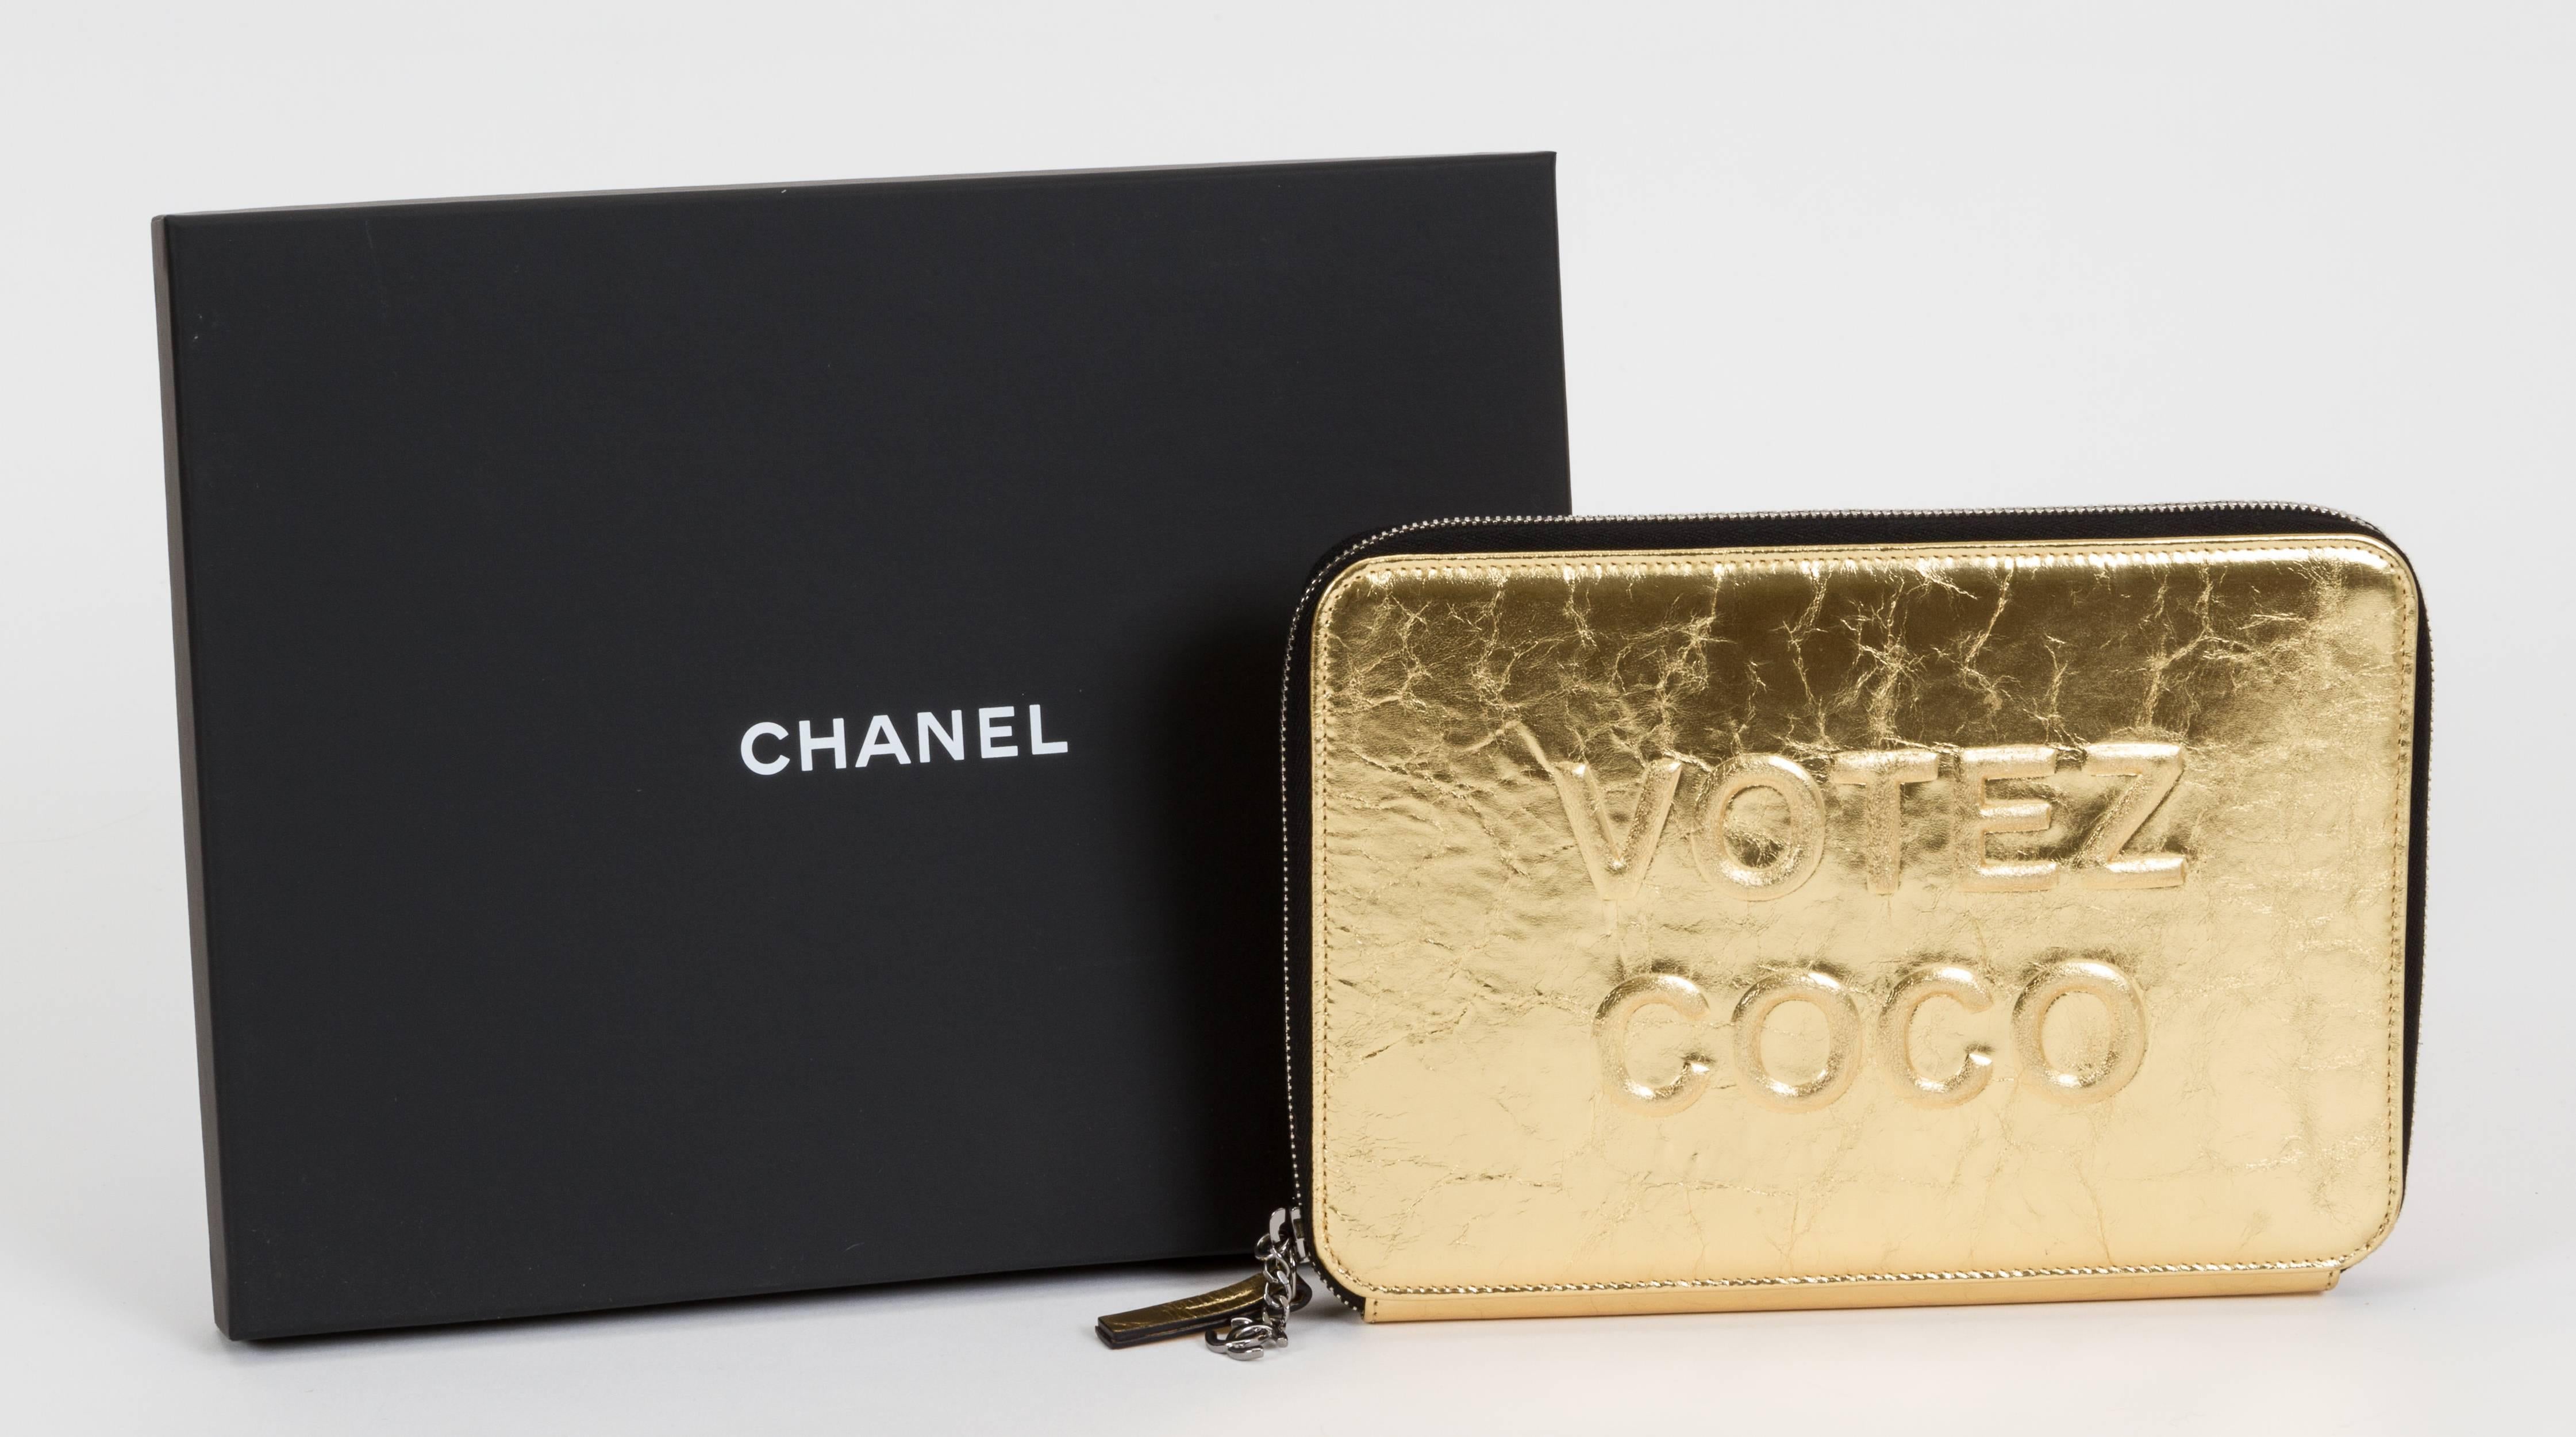 Chanel limitierte Auflage der Votez Coco Clutch aus goldfarbenem Leder, mit Reißverschluss und Kreditkartenfächern. Brandneu in Box mit Hologramm, ID-Karte, Booklet, Samt-Schutzhülle und Box.
